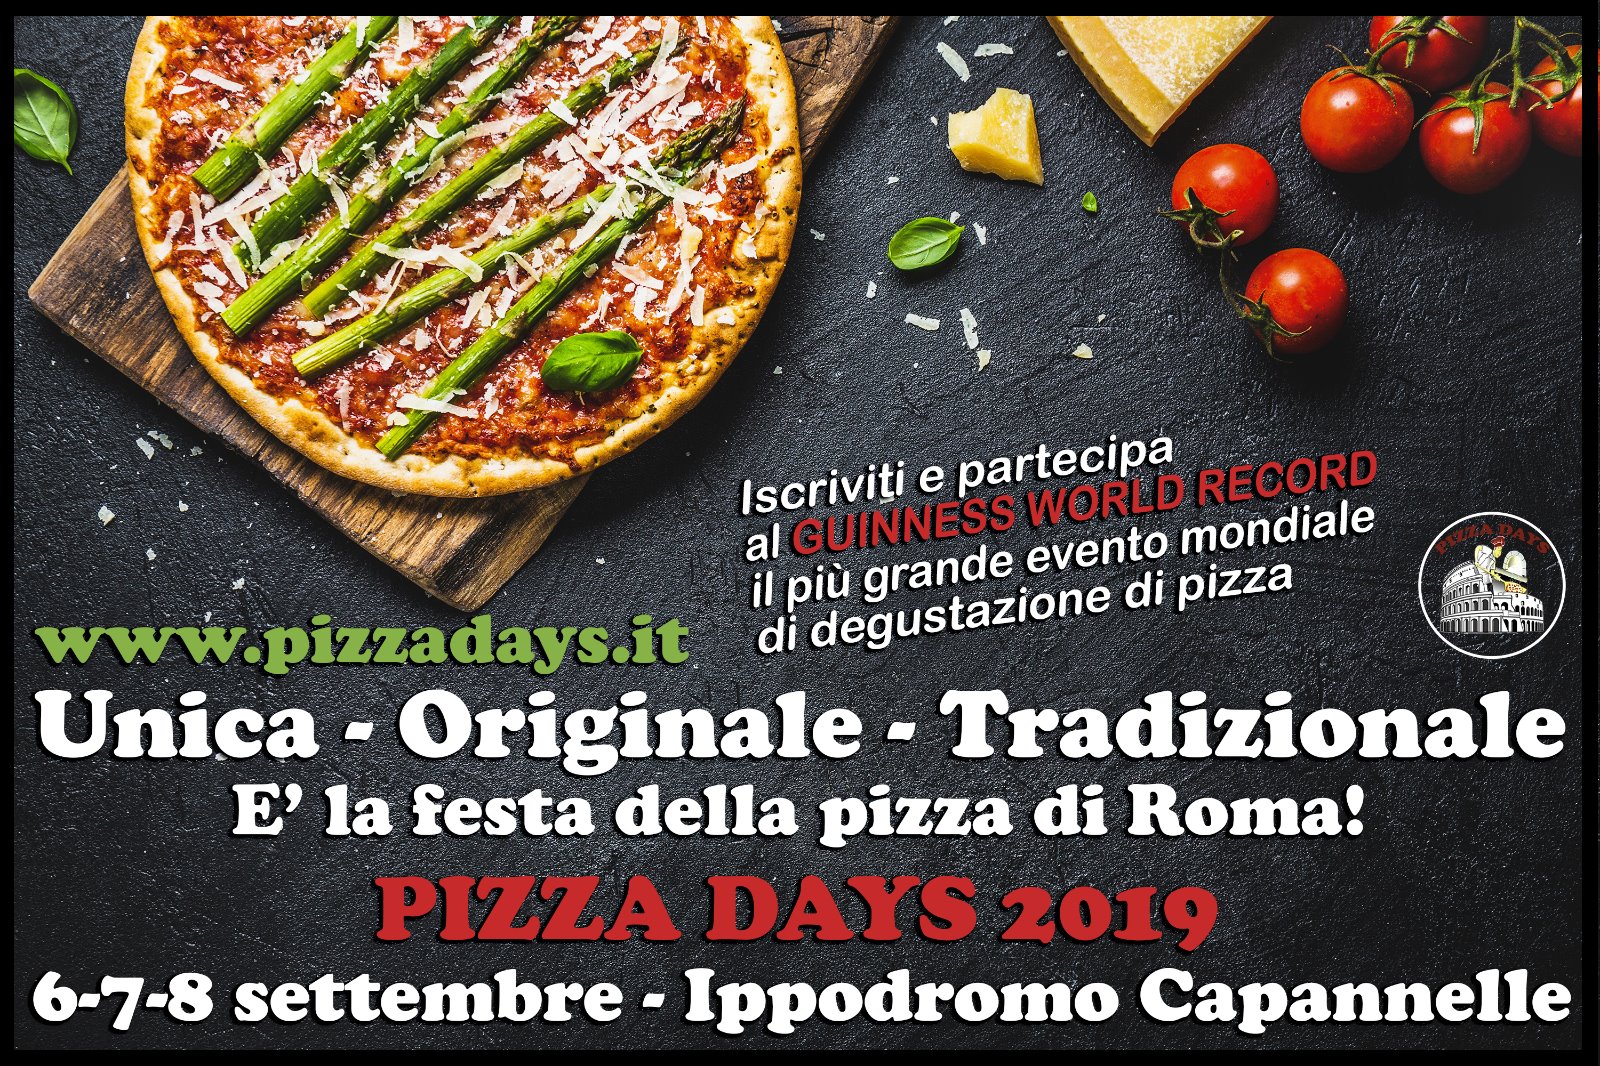 Acquista il biglietto  per  partecipare  a Roma al  Guinness World Record "La festa della pizza più grande del mondo" - 6/7/8 settembre 2019 all'Ippodromo delle Capannelle